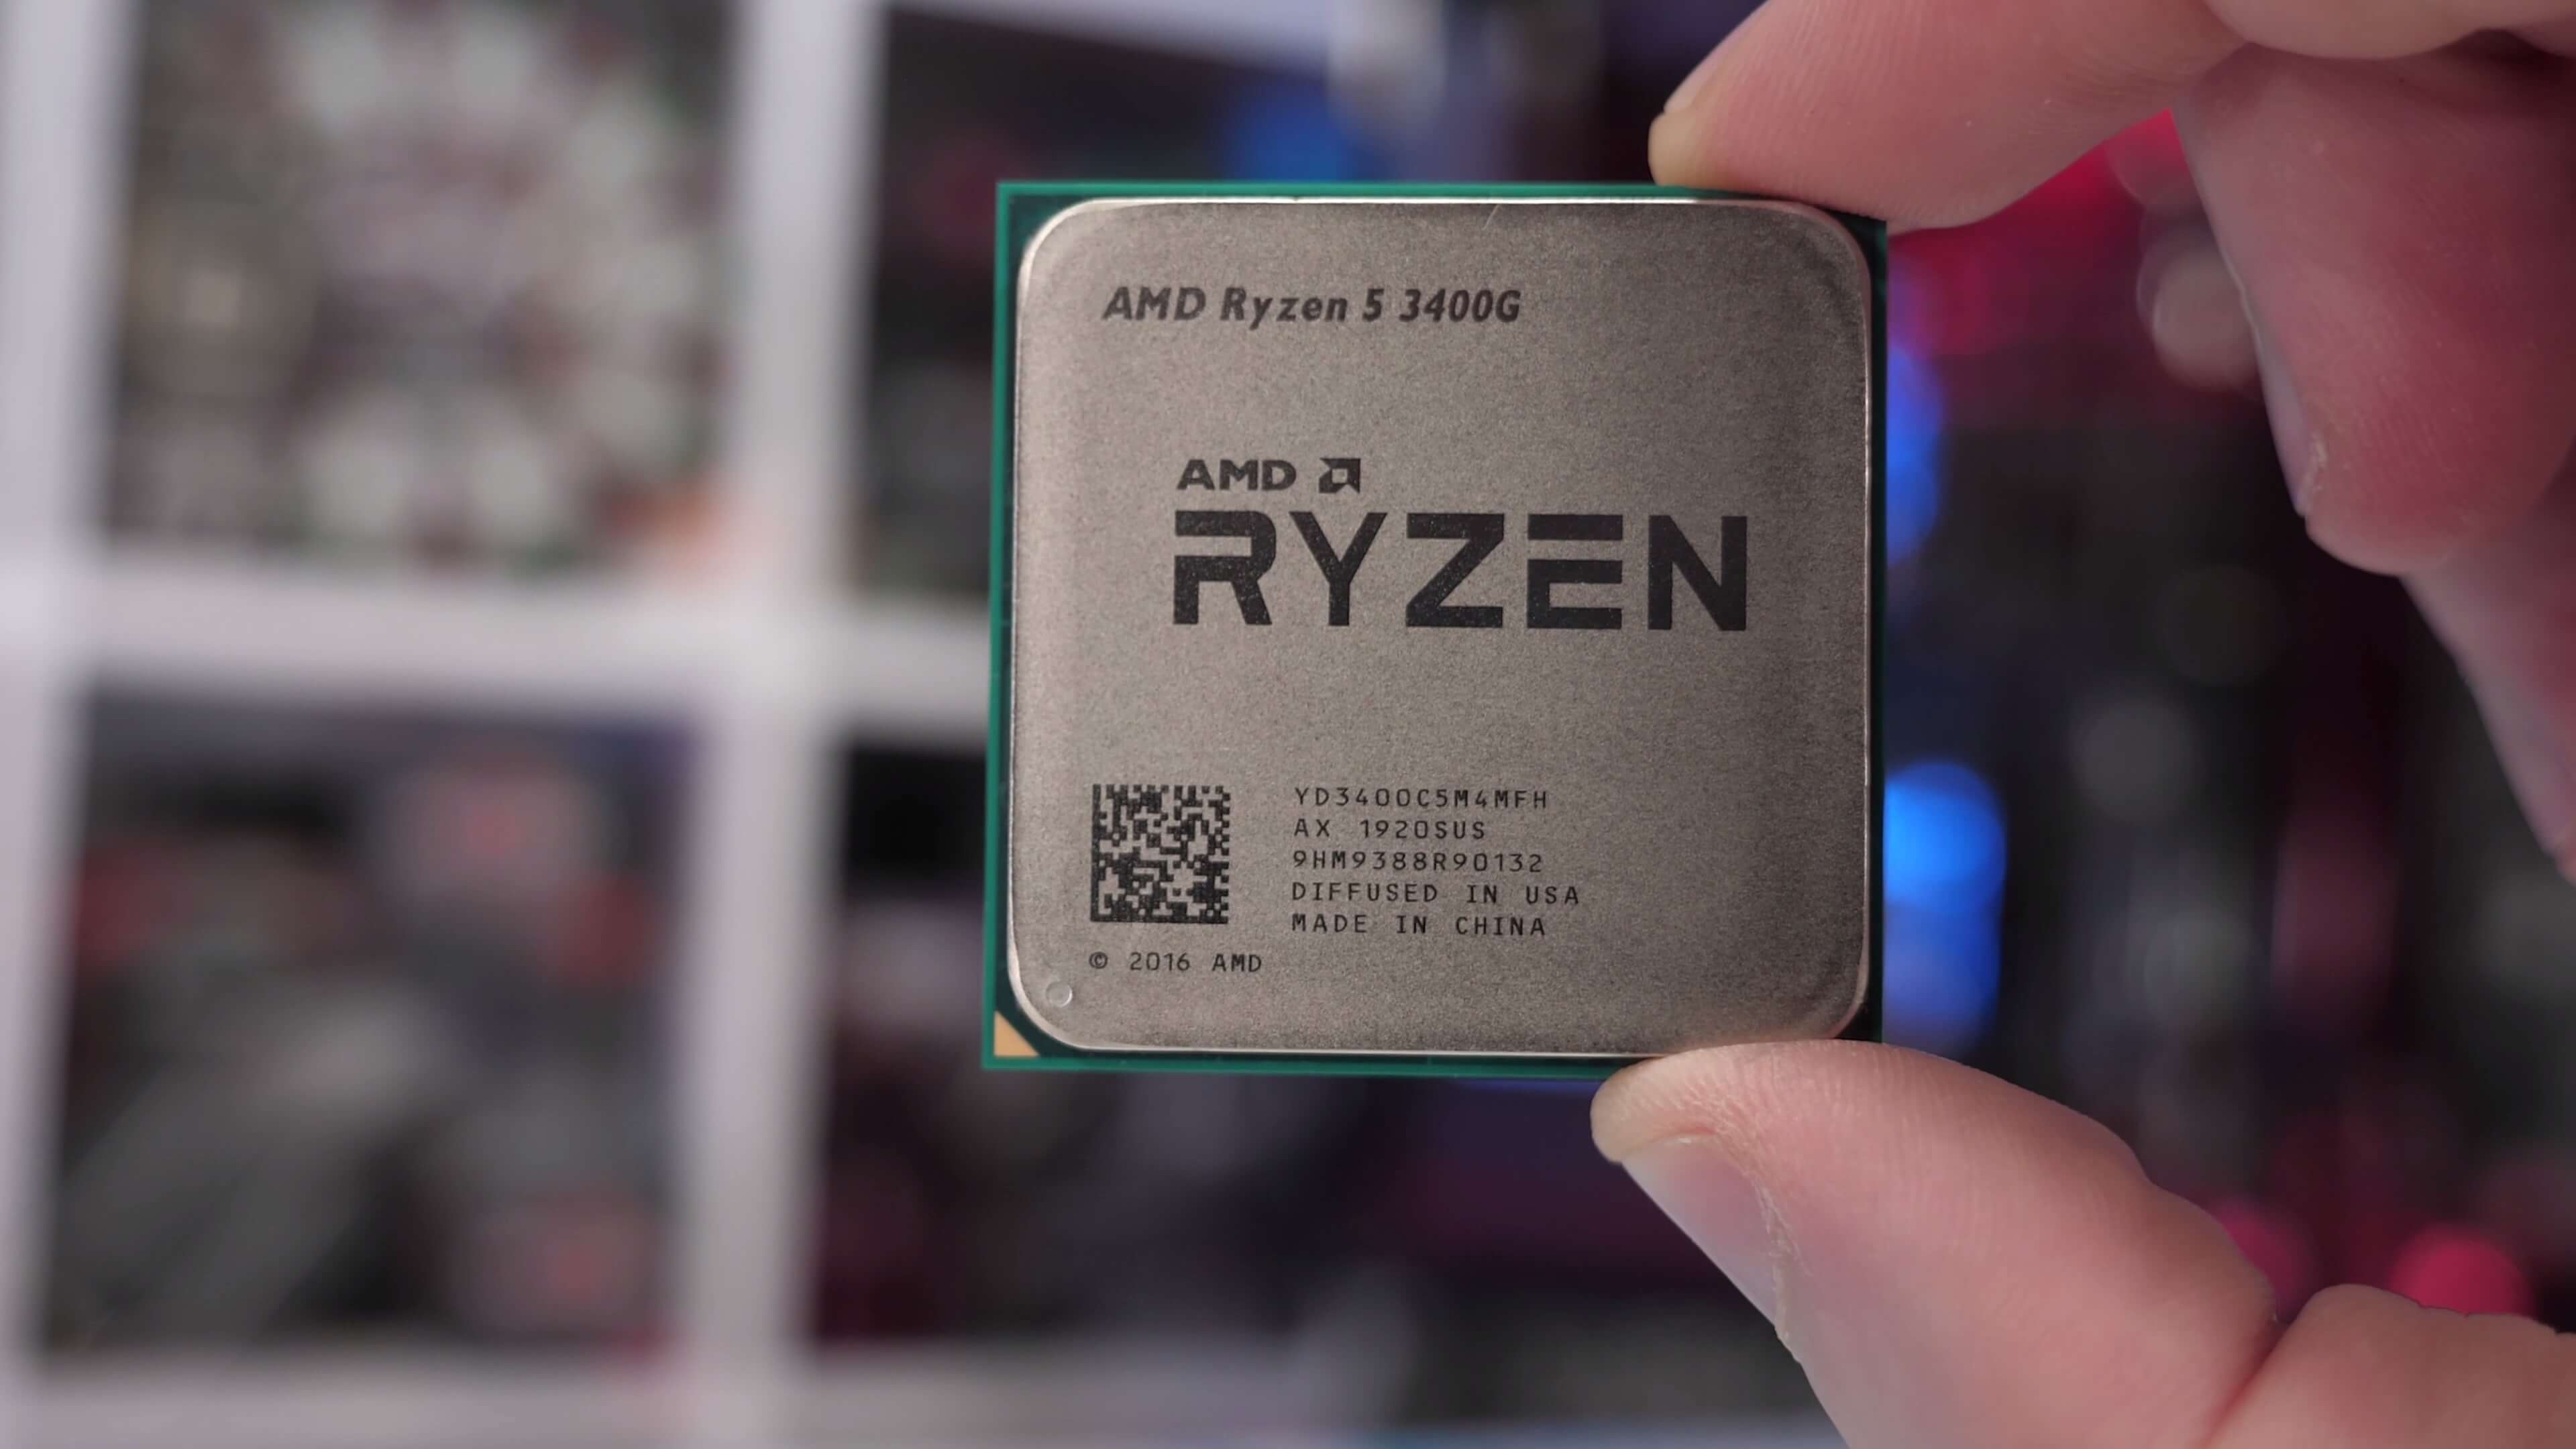 Ryzen 5 G Review: CPU + Vega Graphics   TechSpot